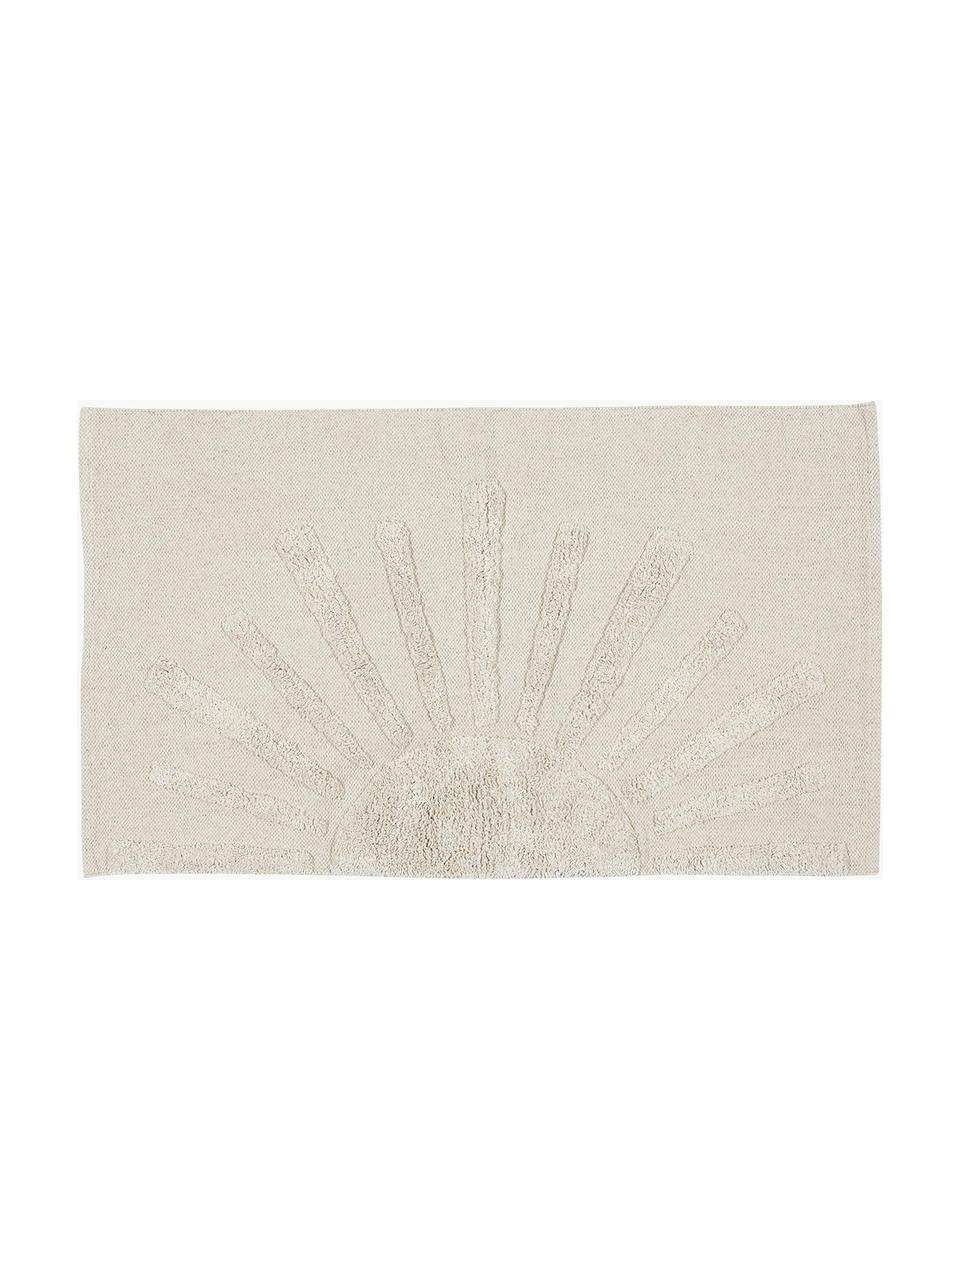 Tappetino da bagno con motivo in rilievo Sun, 100% cotone organico
Non antiscivolo, Beige chiaro, Larg. 60 x Lung. 90 cm